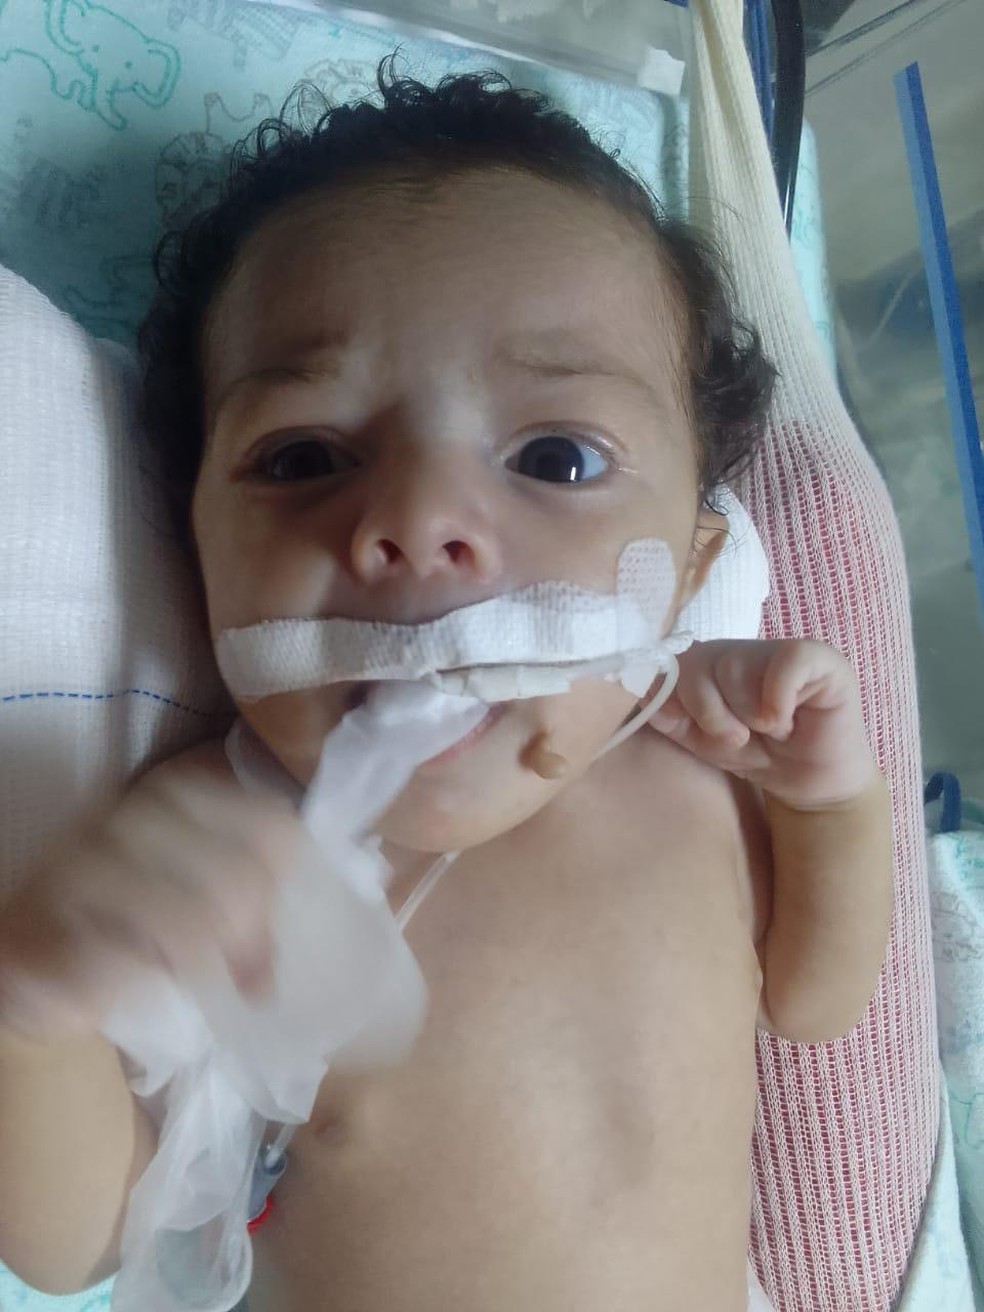 Família luta para conseguir remédio de R$ 35 mil para bebê com